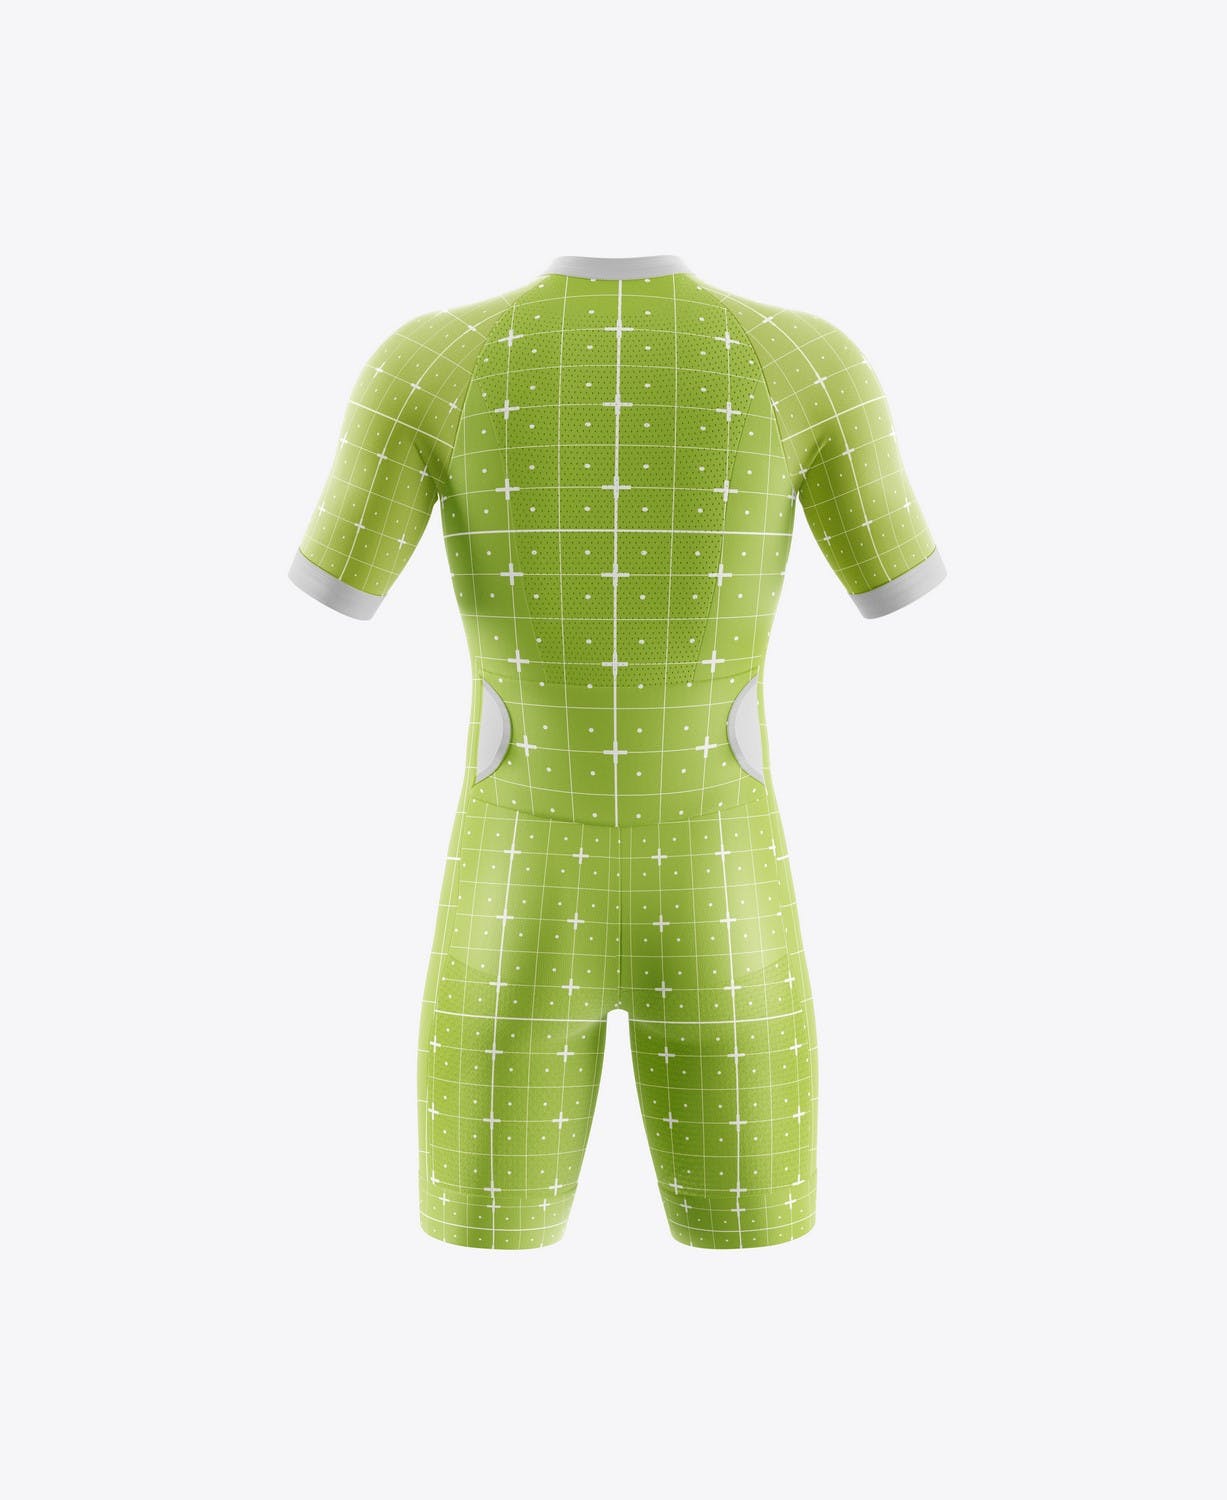 男子运动套装自行车服装品牌设计样机 Sport Cycling Suit for Men Mockup 样机素材 第8张